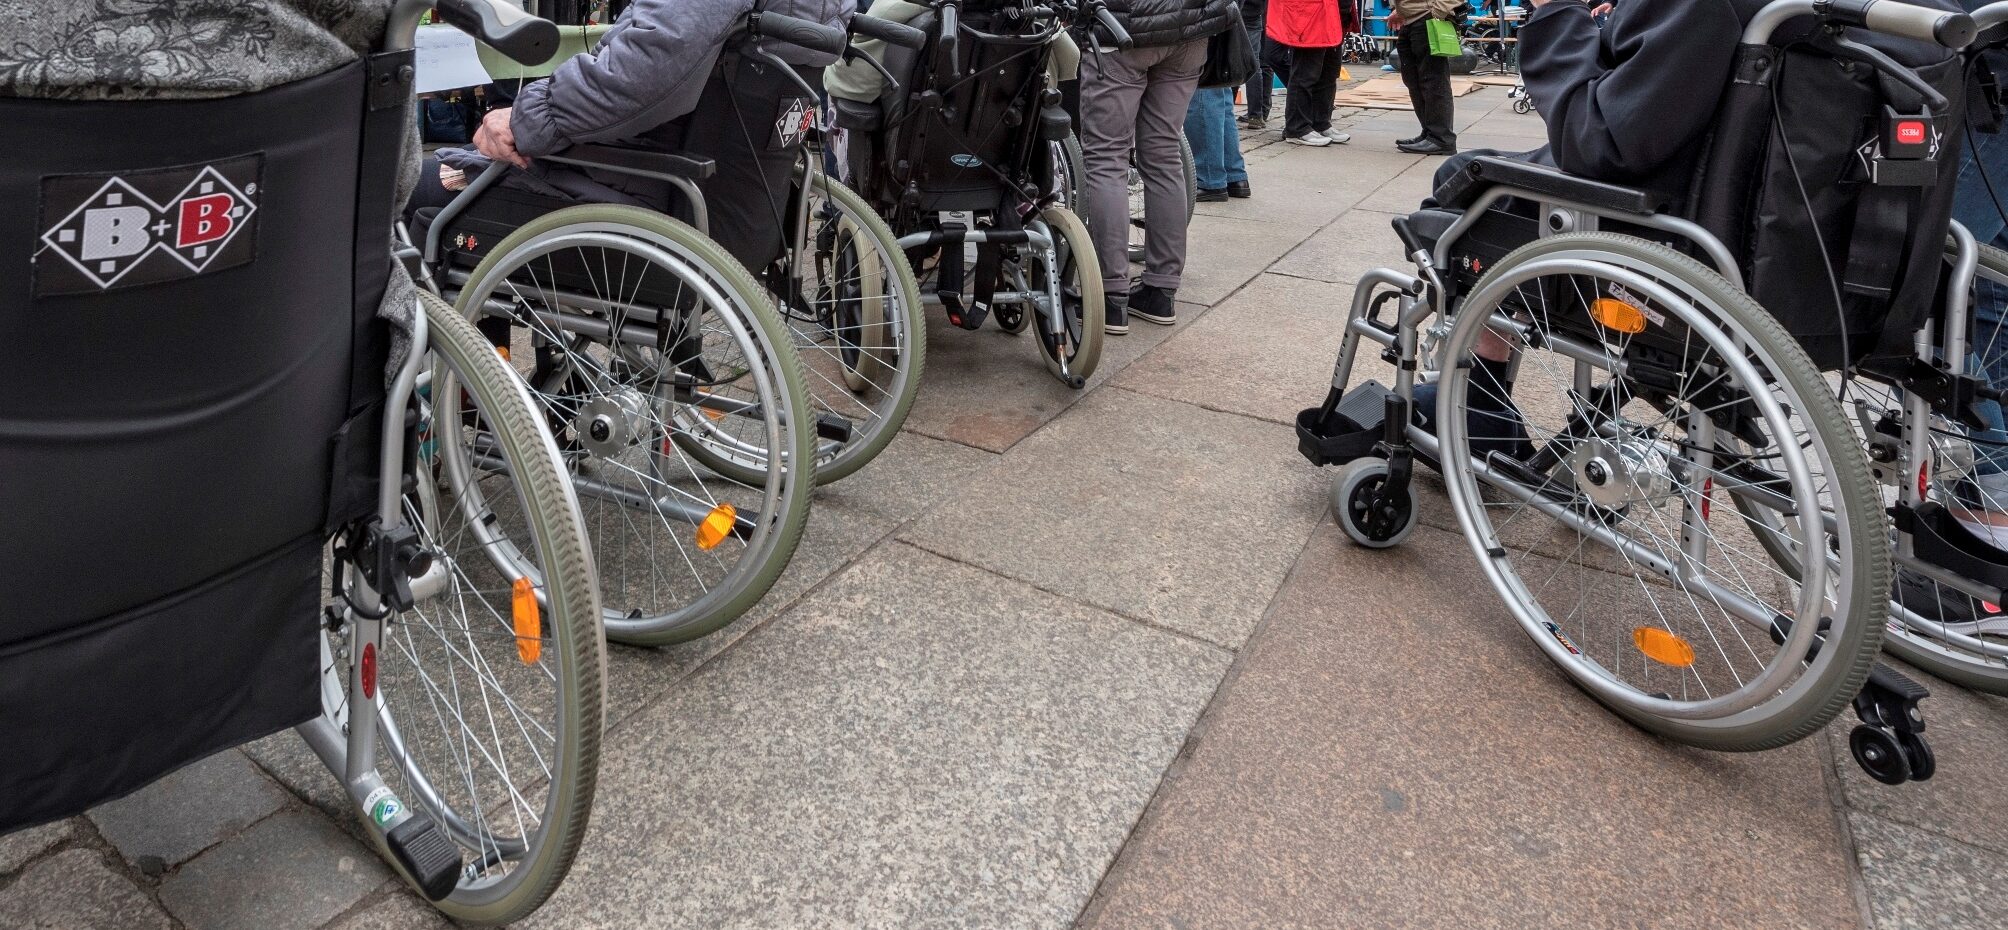 Rollstuhlfahrende Menschen auf einem öffentlichen Platz